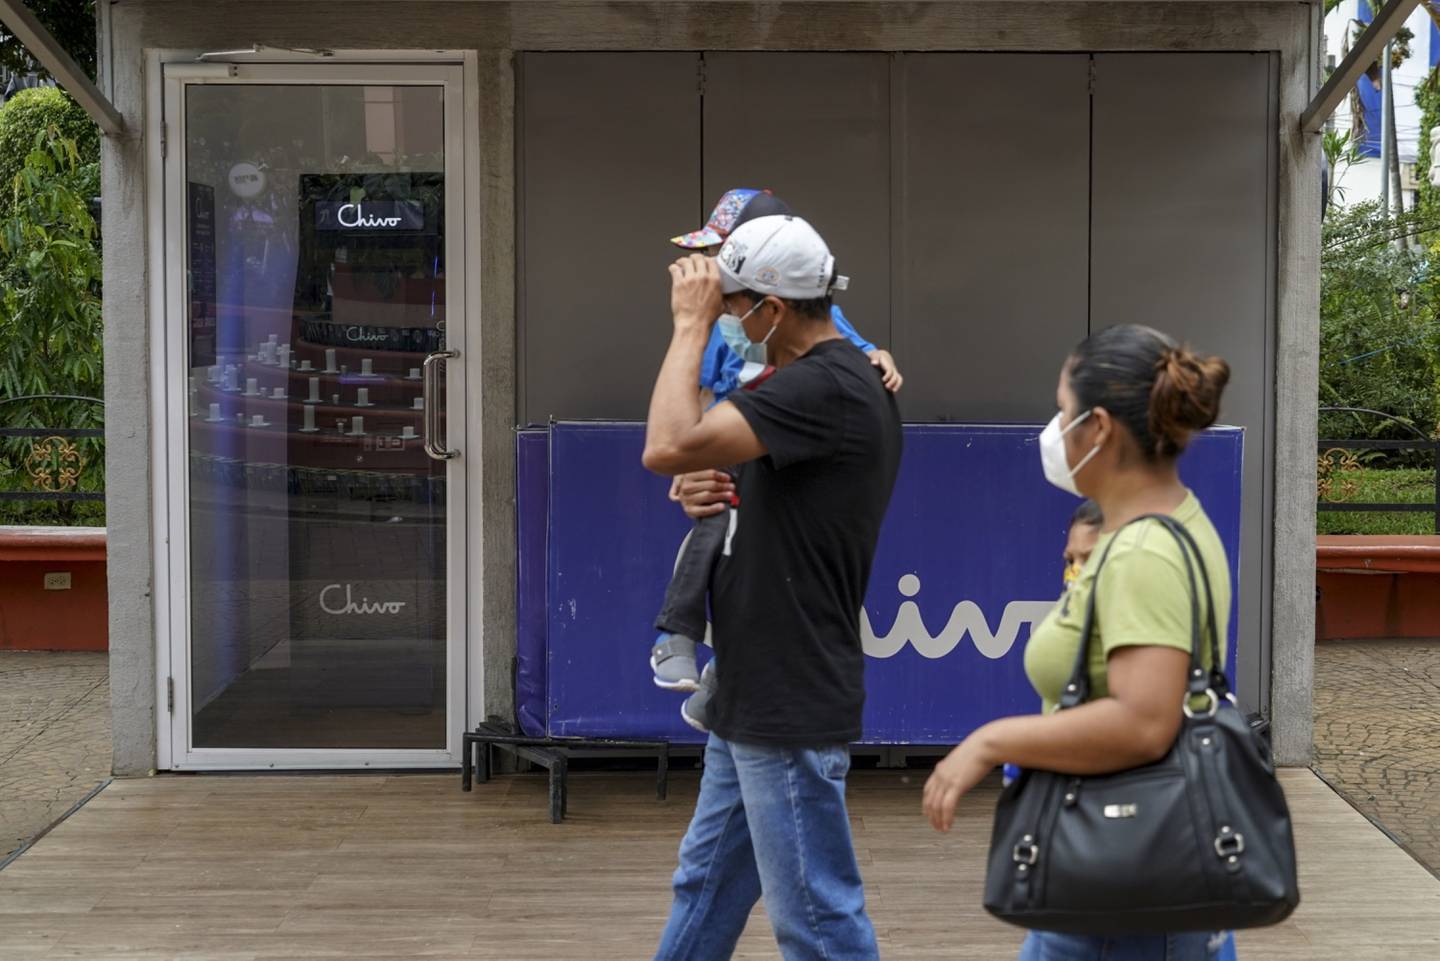 La instalación de cajeros automáticos para promocionar un medio de pago digital es uno de los contrasentidos de la estrategia de bitcoin, opinan analistas. Foto: Camilo Freedman/Bloombergdfd